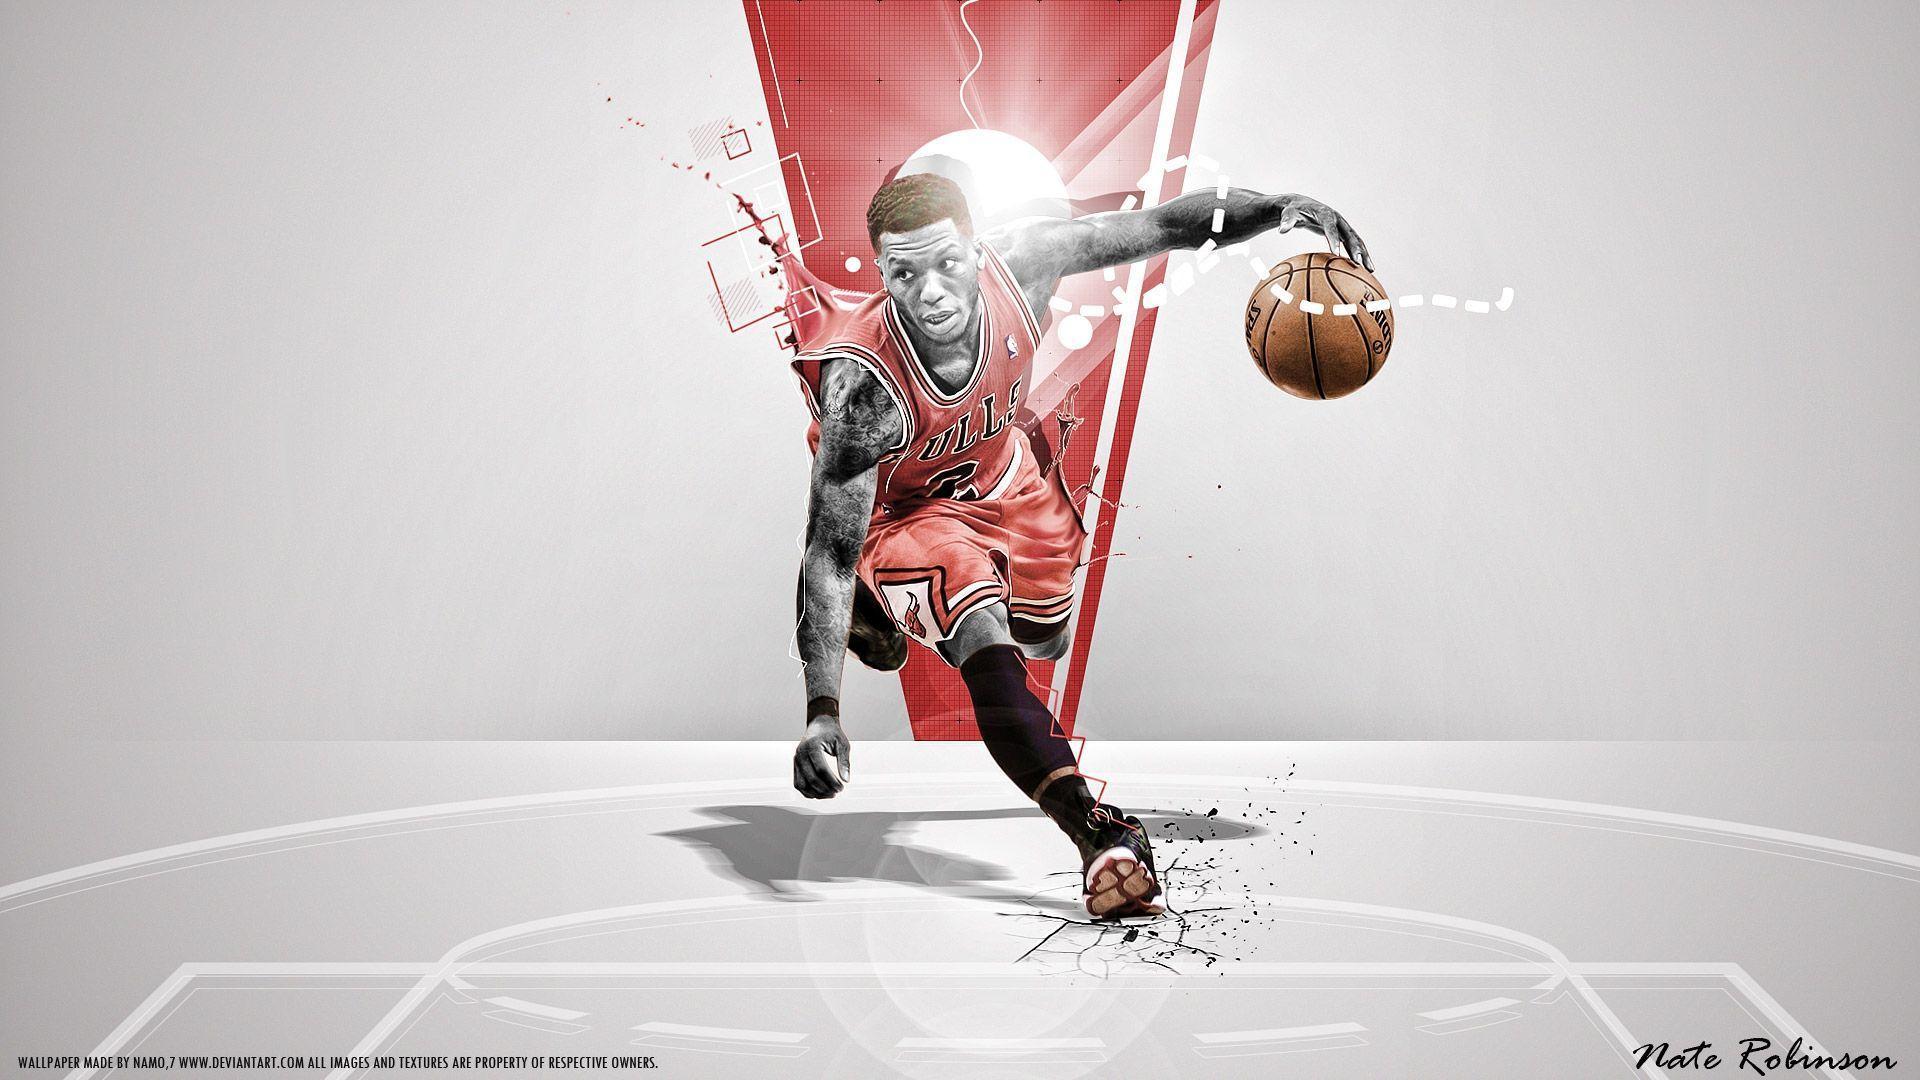 Nate Robinson Wallpaper. Basketball Wallpaper at